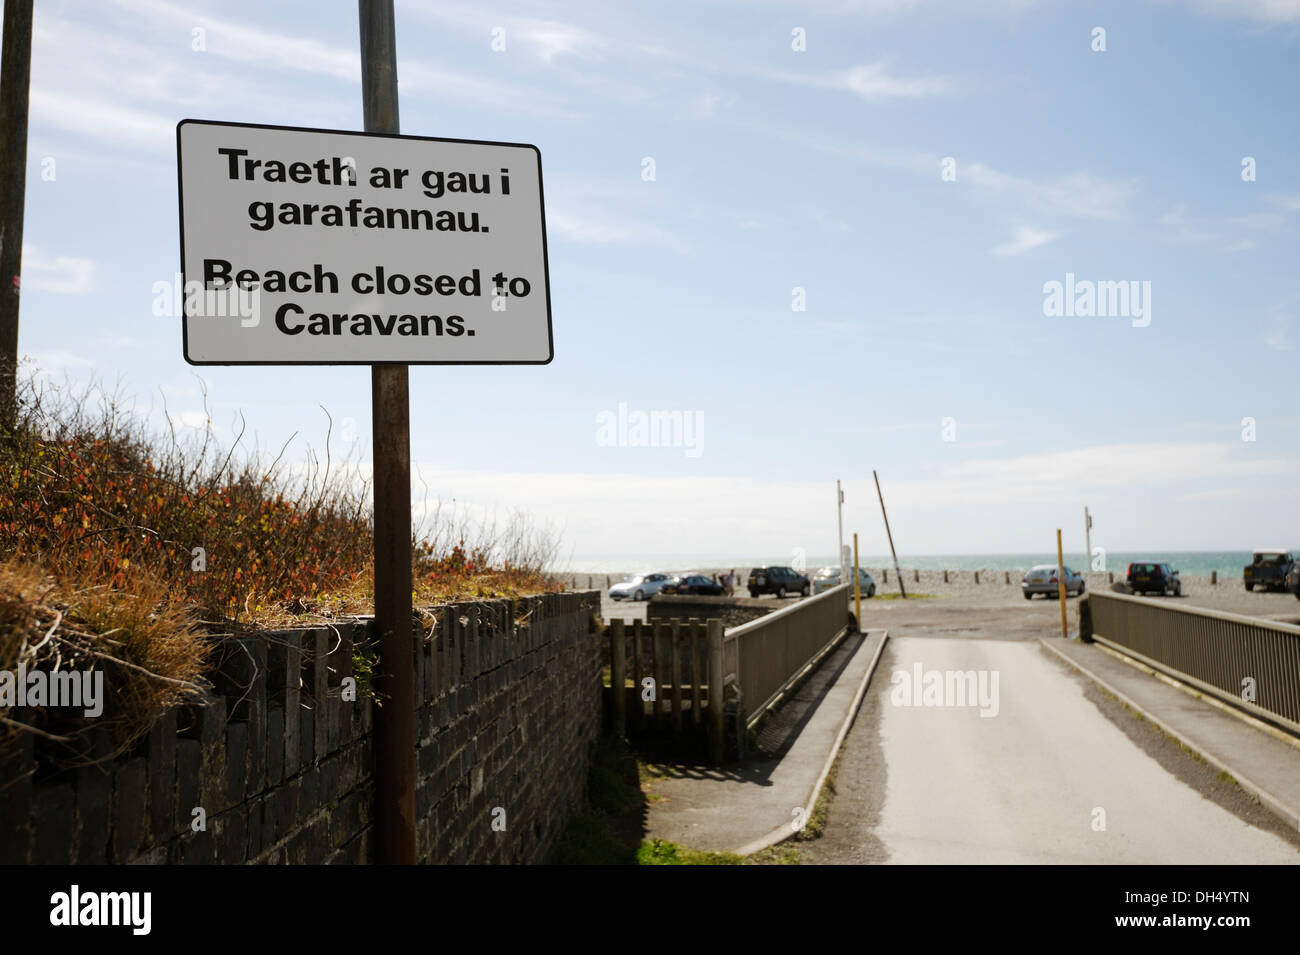 Cartello bilingue in inglese e gallese affermando che "la spiaggia chiusa per roulotte', Aberystwyth, Wales, Regno Unito. Foto Stock